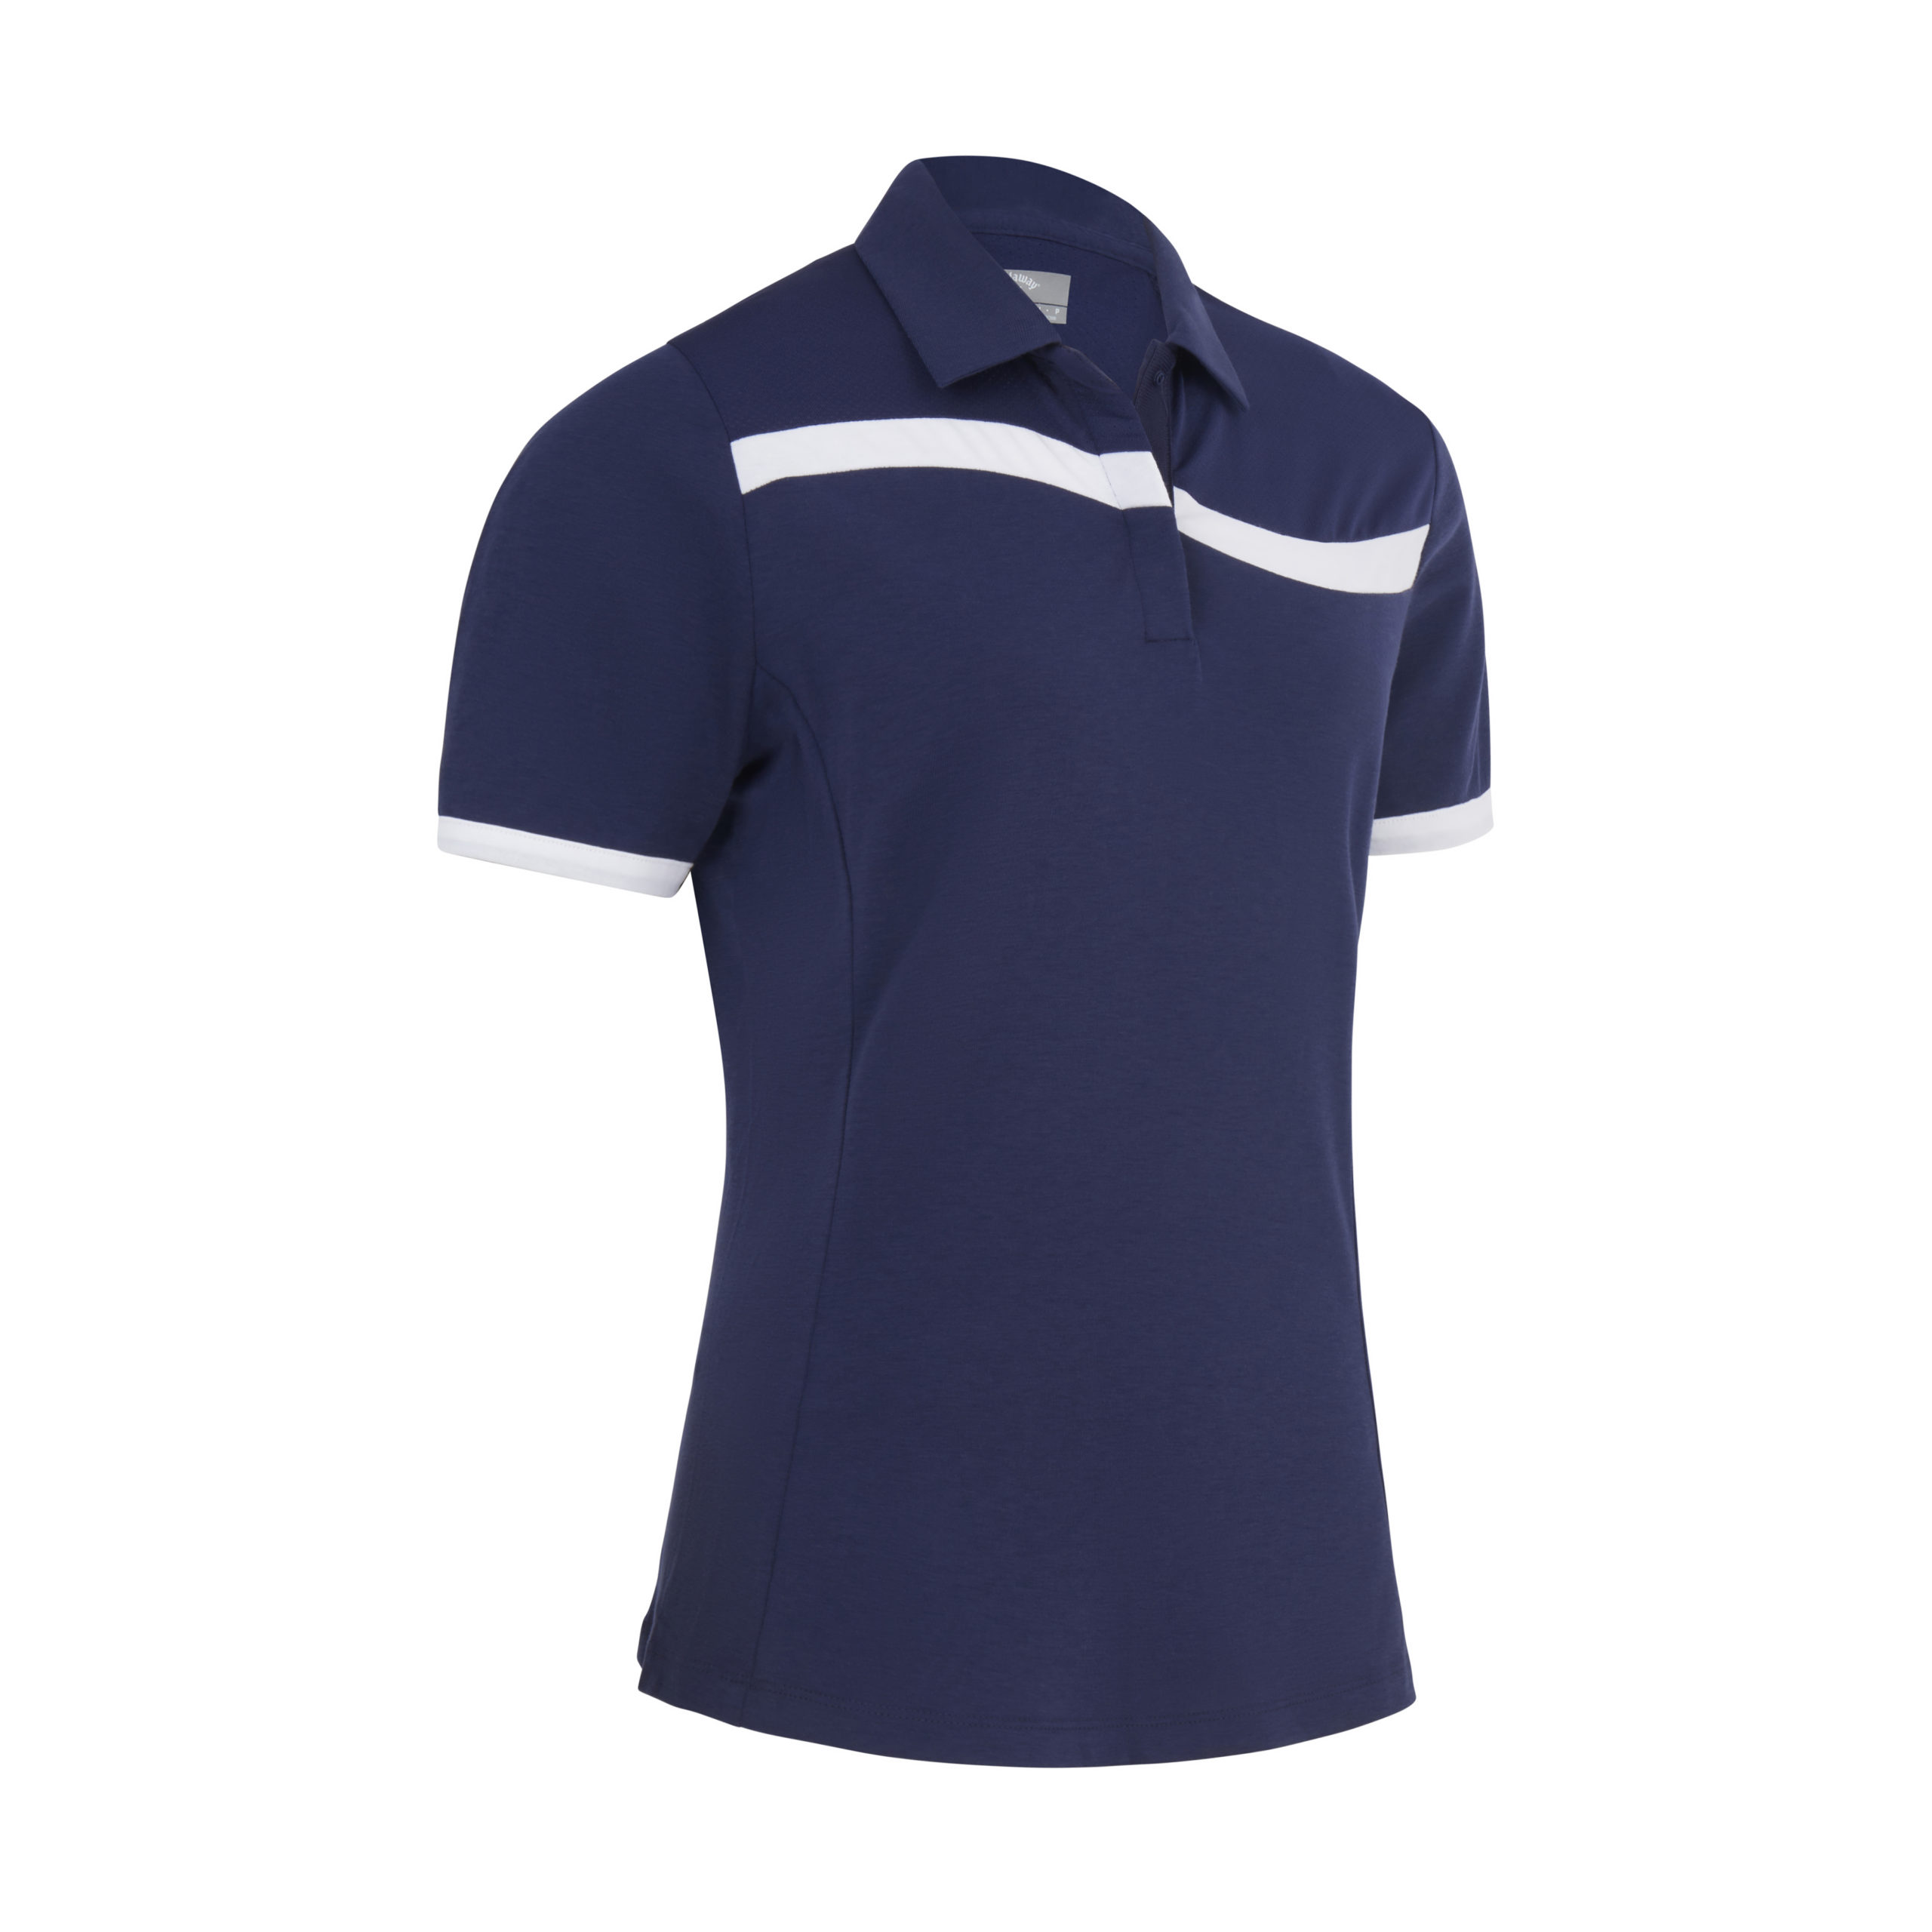 Callaway Colourblock dámské golfové triko, tmavě modré, vel. XL